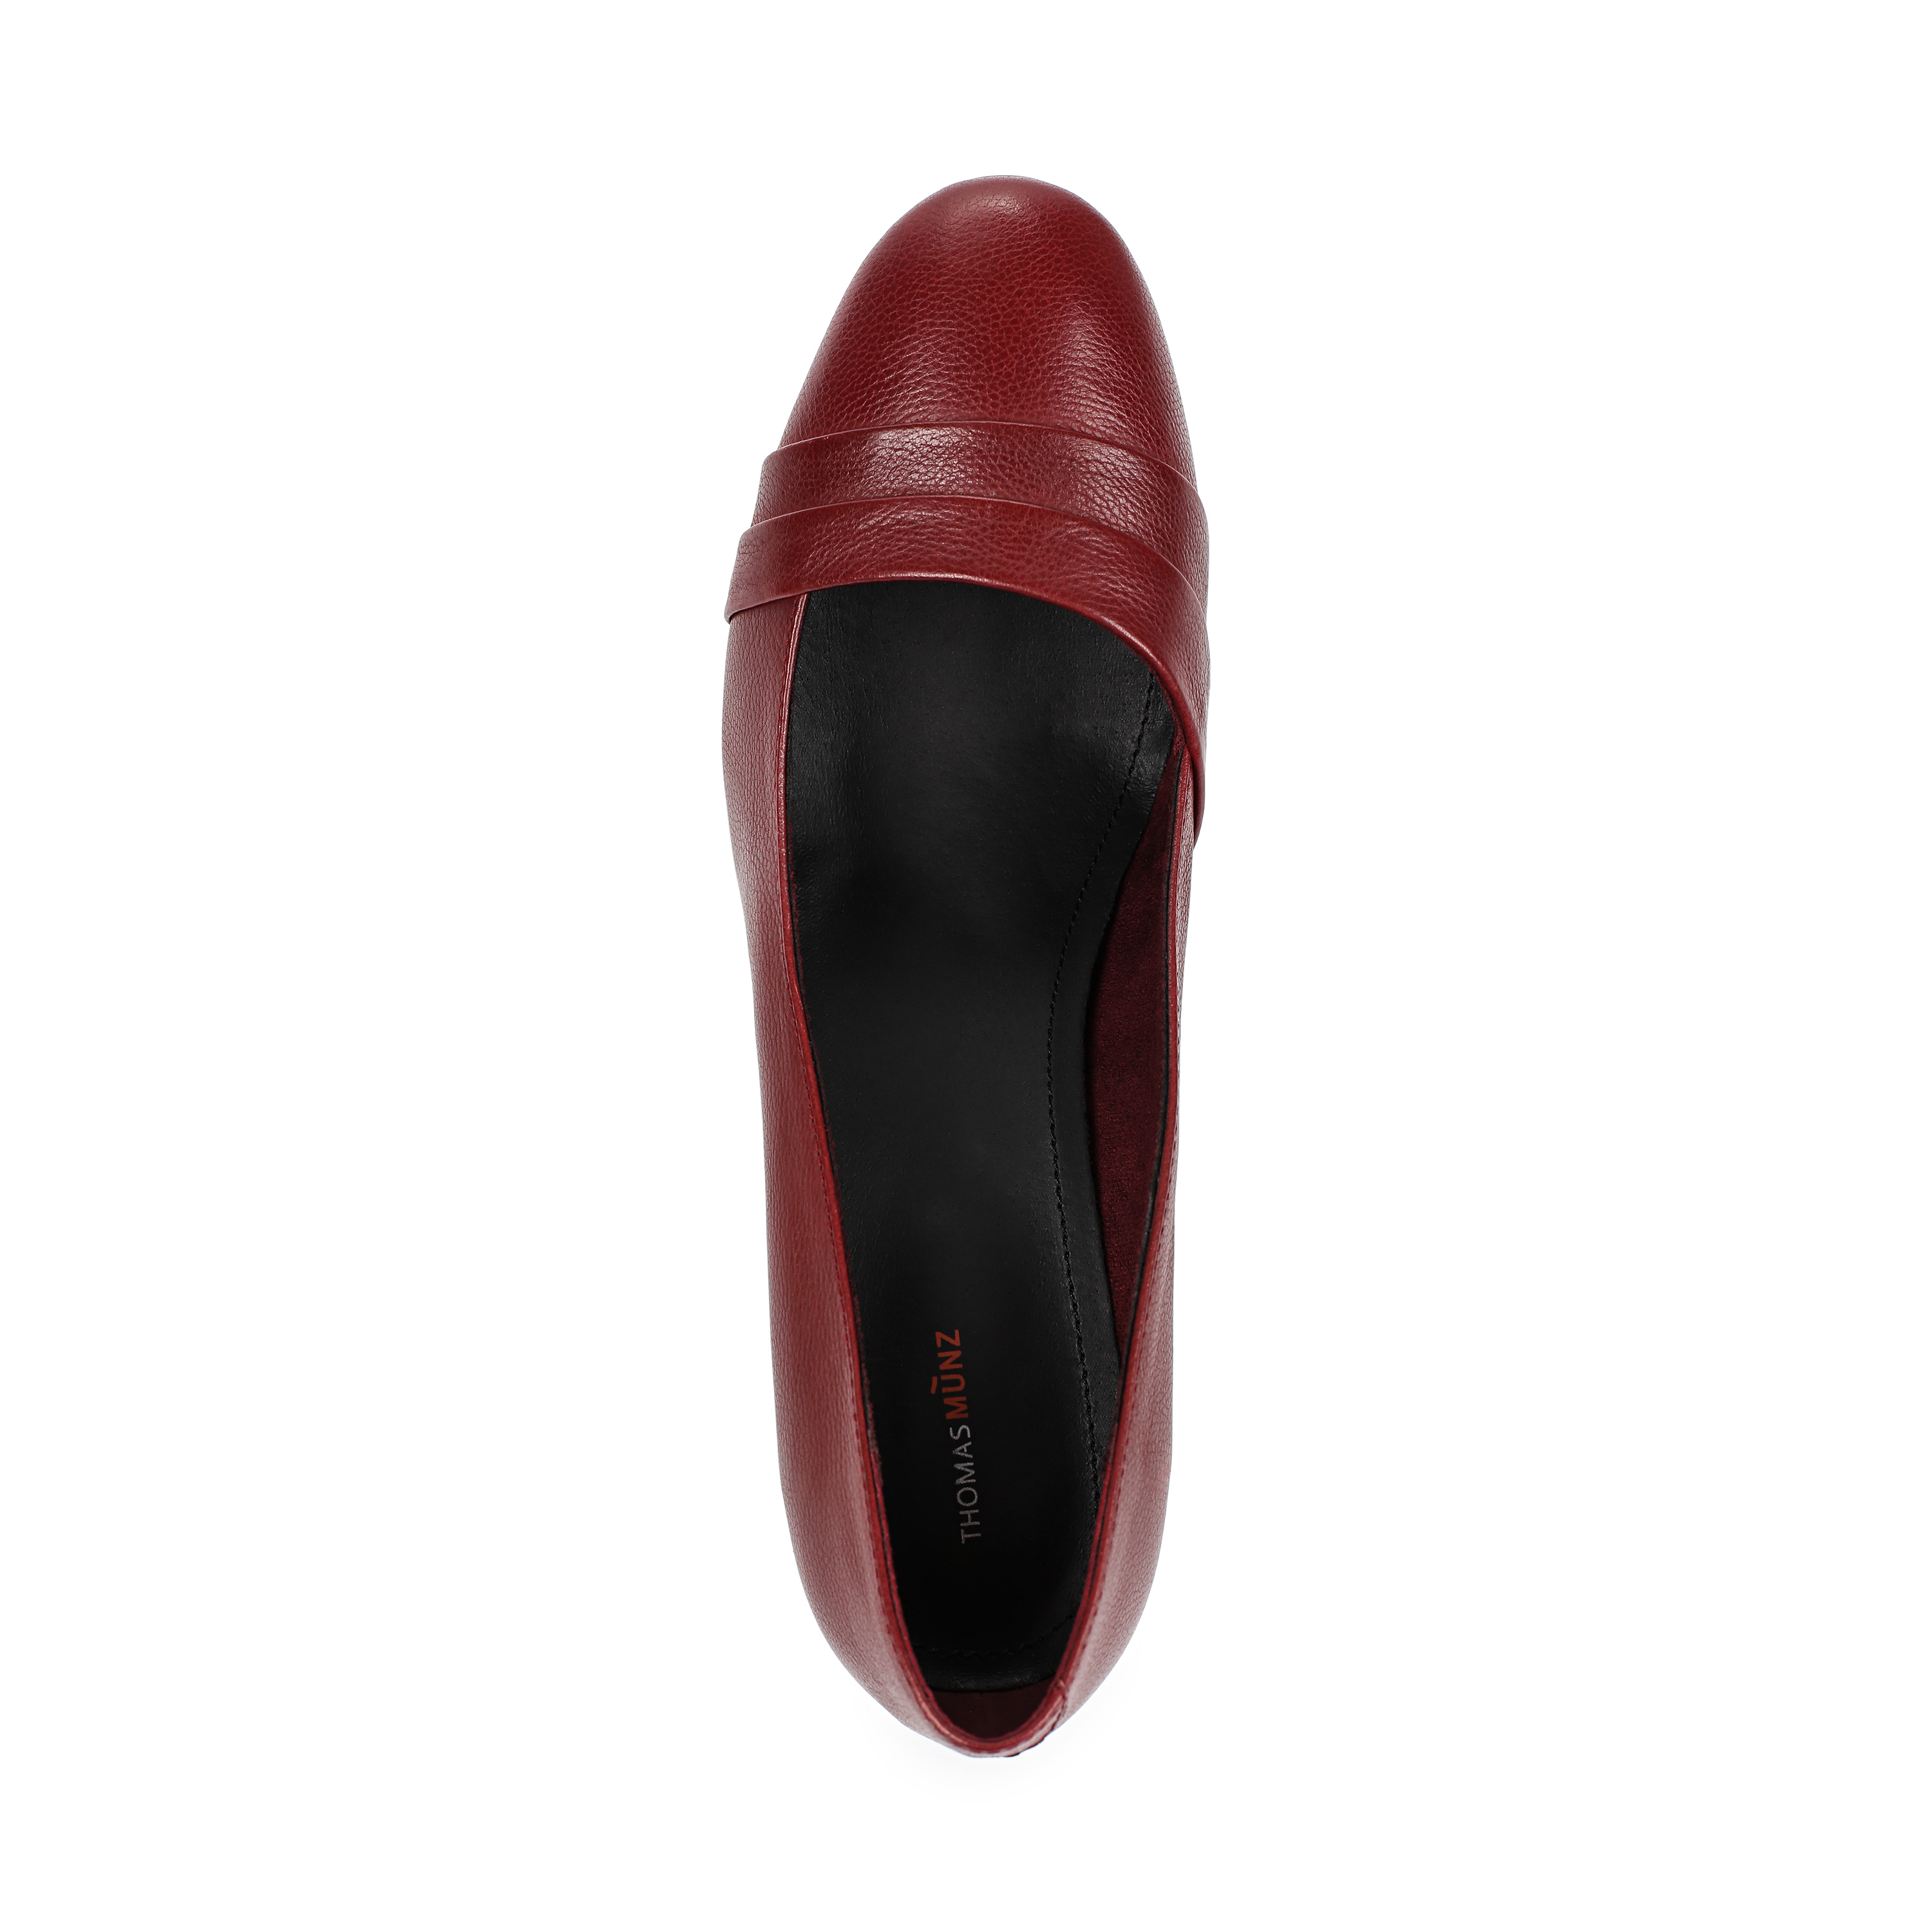 Туфли Thomas Munz 233-408A-2105 233-408A-2105, цвет бордовый, размер 36 лодочки - фото 5